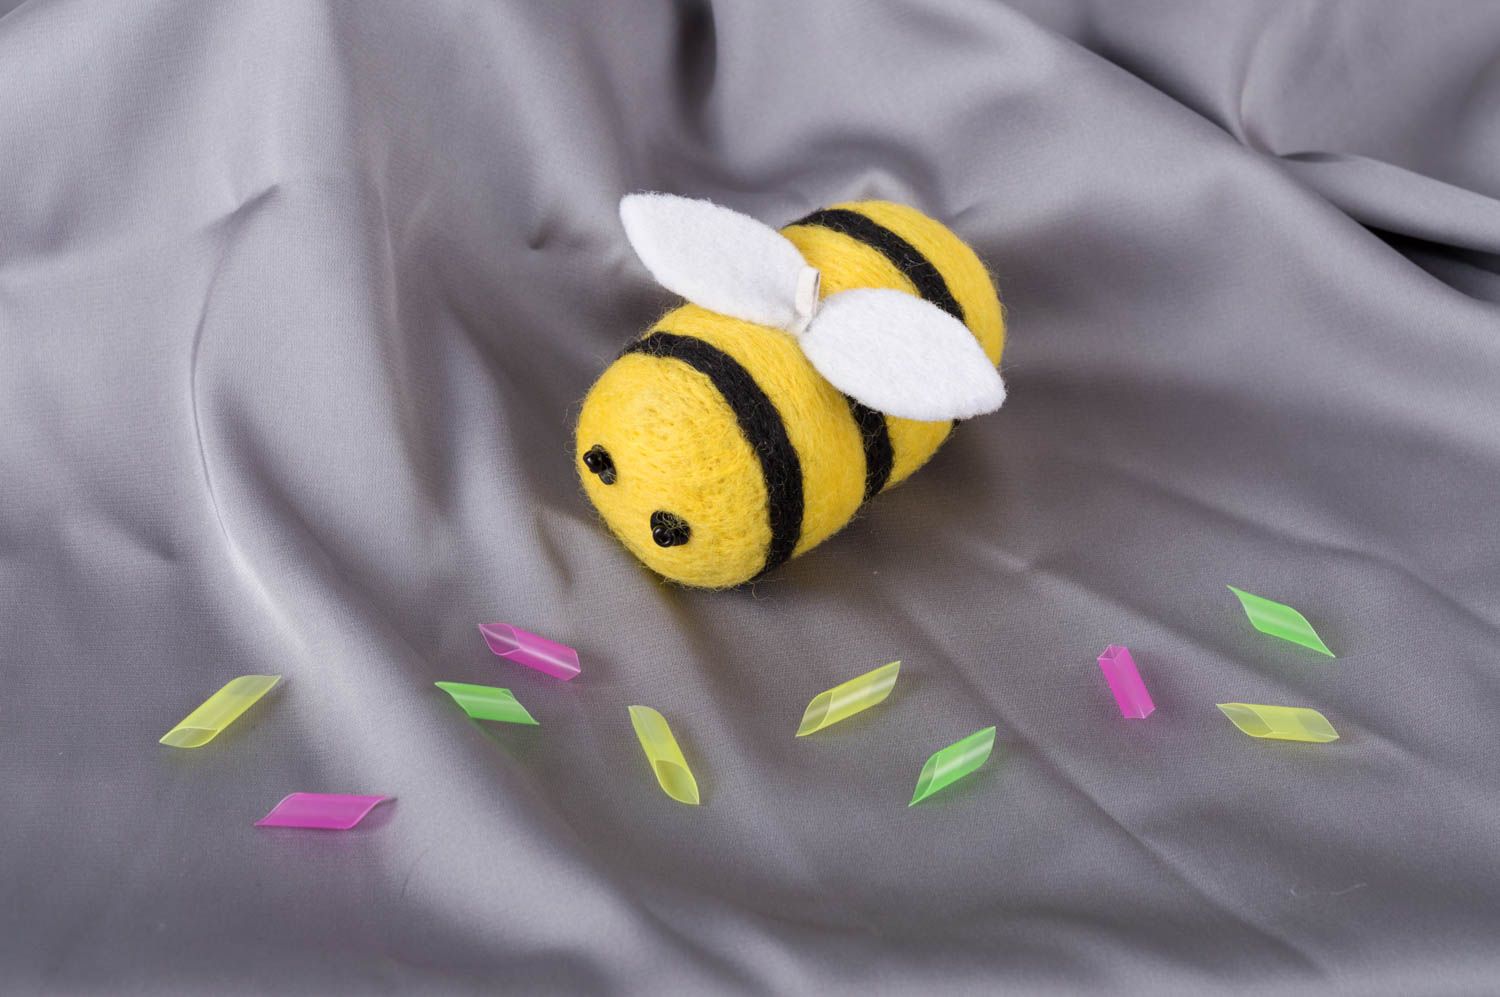 Миниатюрная игрушка ручной работы в технике валяния из шерсти мериноса Пчелка фото 1